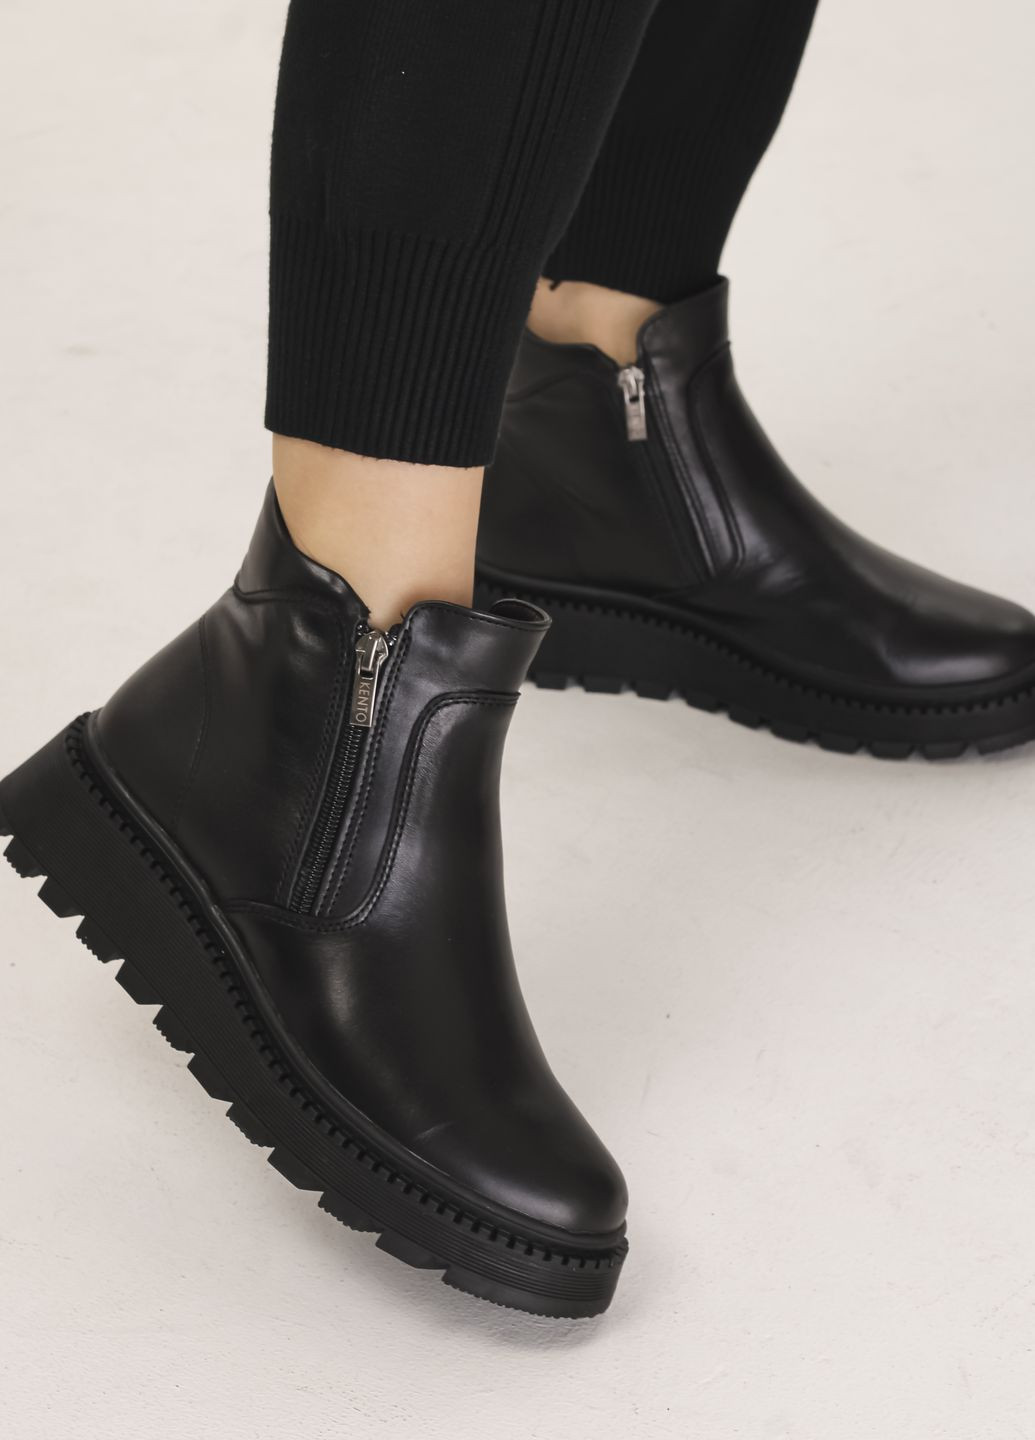 ботинки женские зимние черные кожа Kento